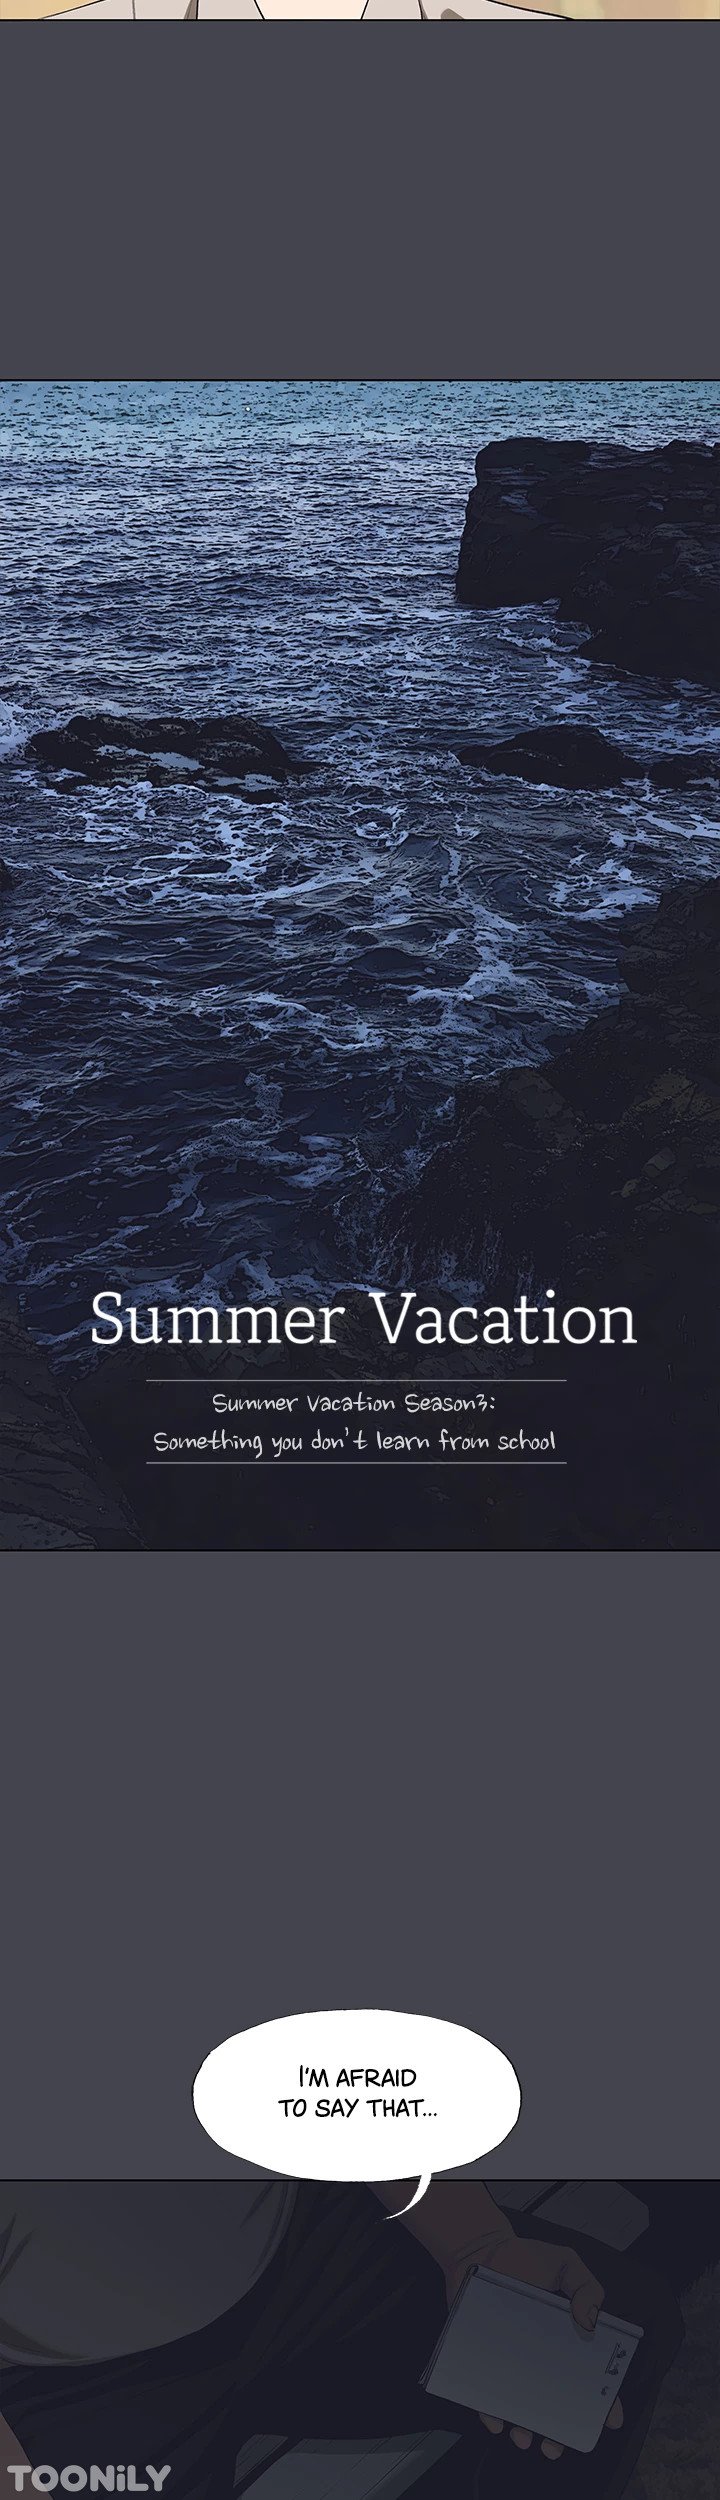 summer-vacation-chap-111-1